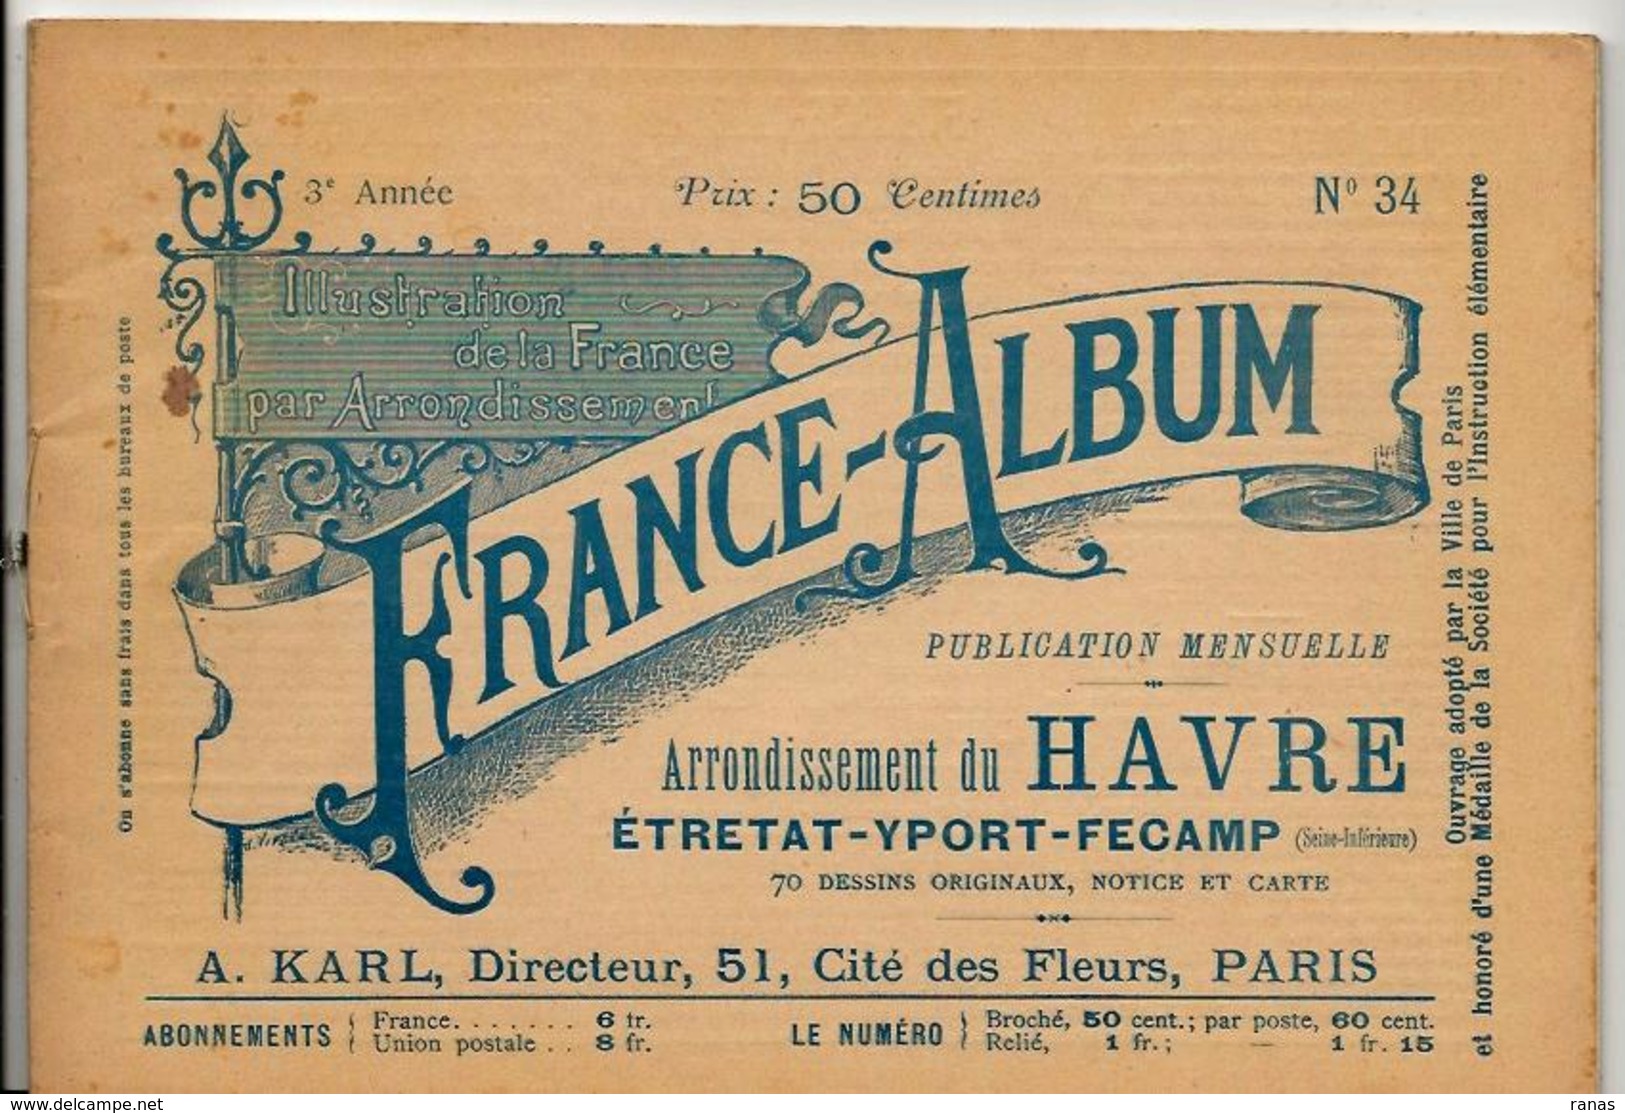 Seine Inférieure France Album De A. KARL, Carte Gravures Texte Publicités 1895 - Dépliants Touristiques